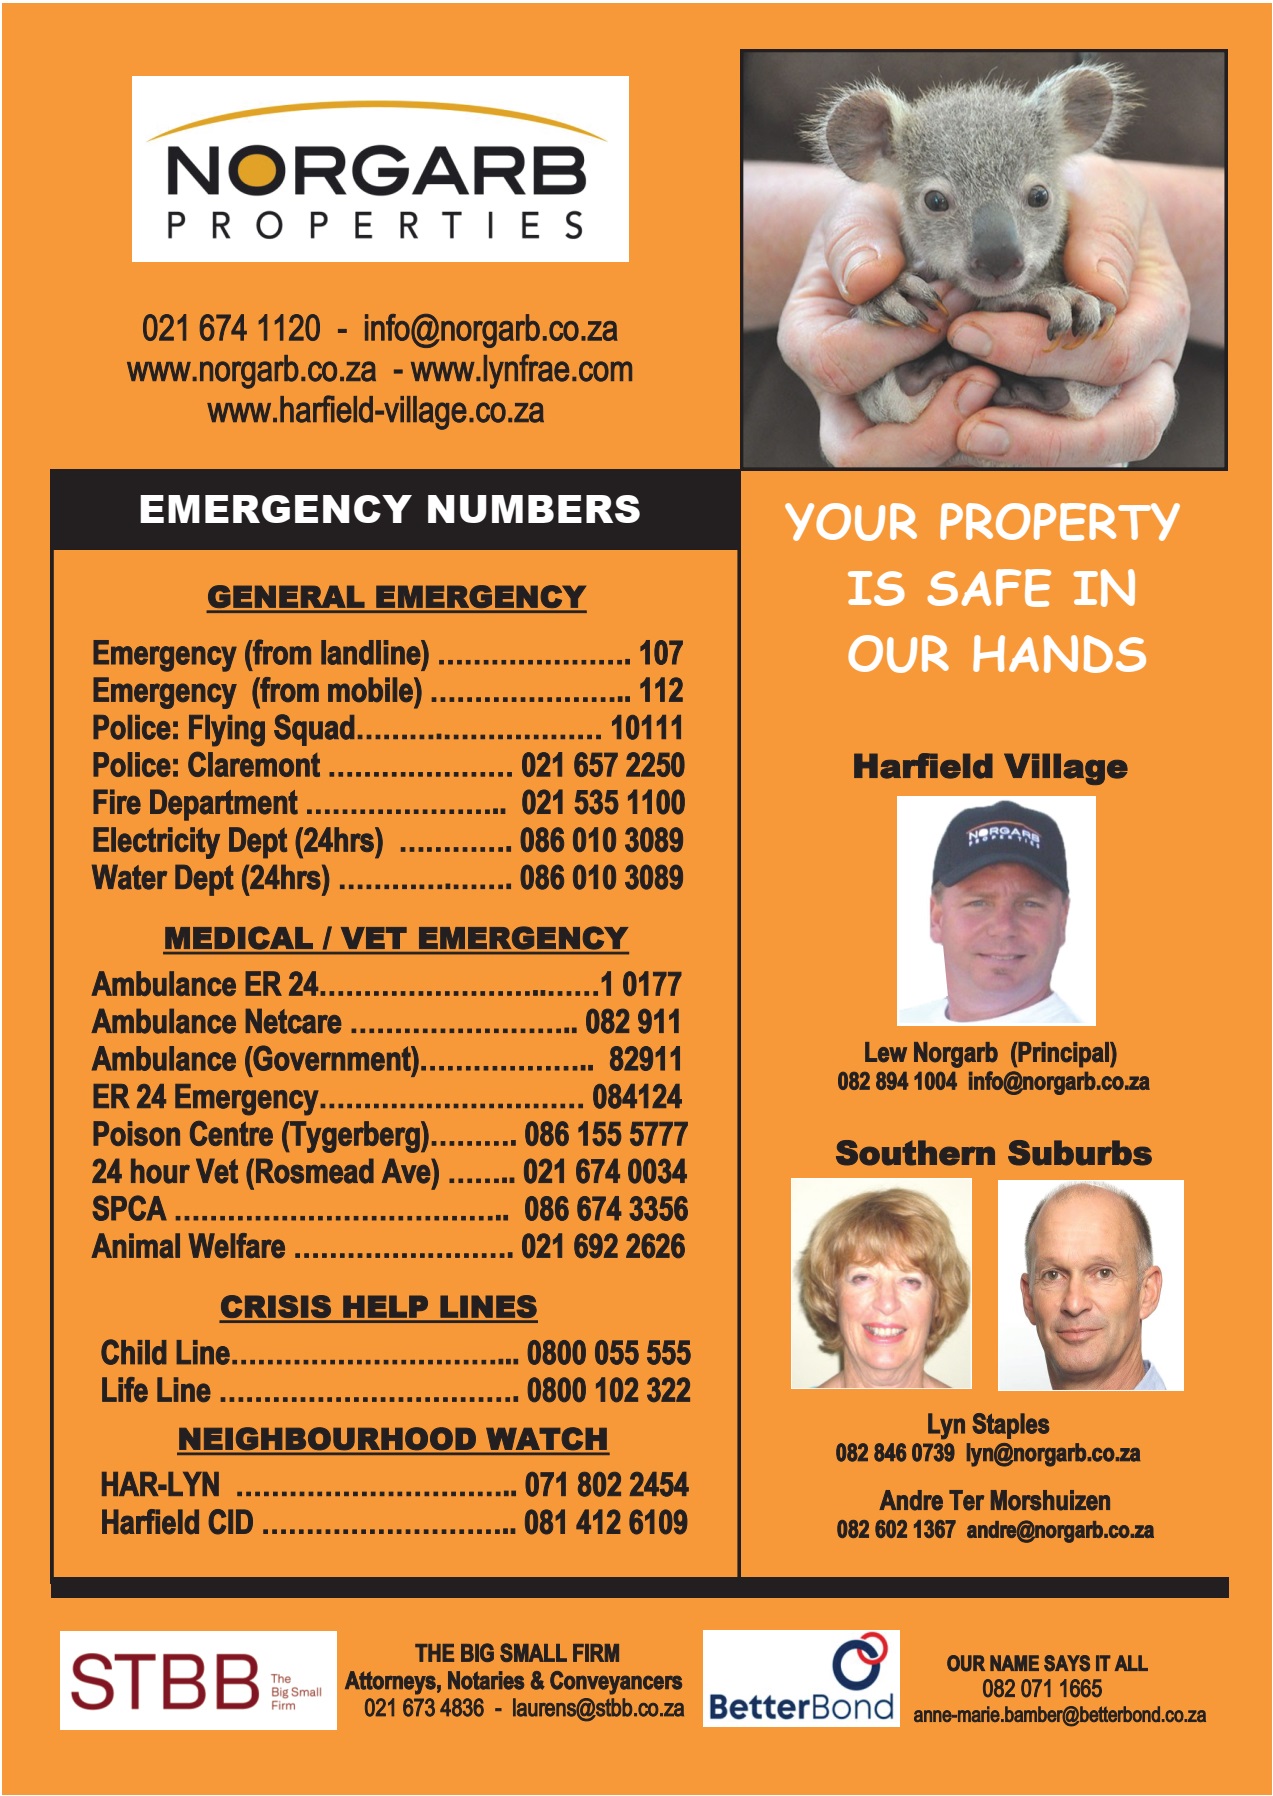                                 Harfield Village Emergency Numbers
              
              